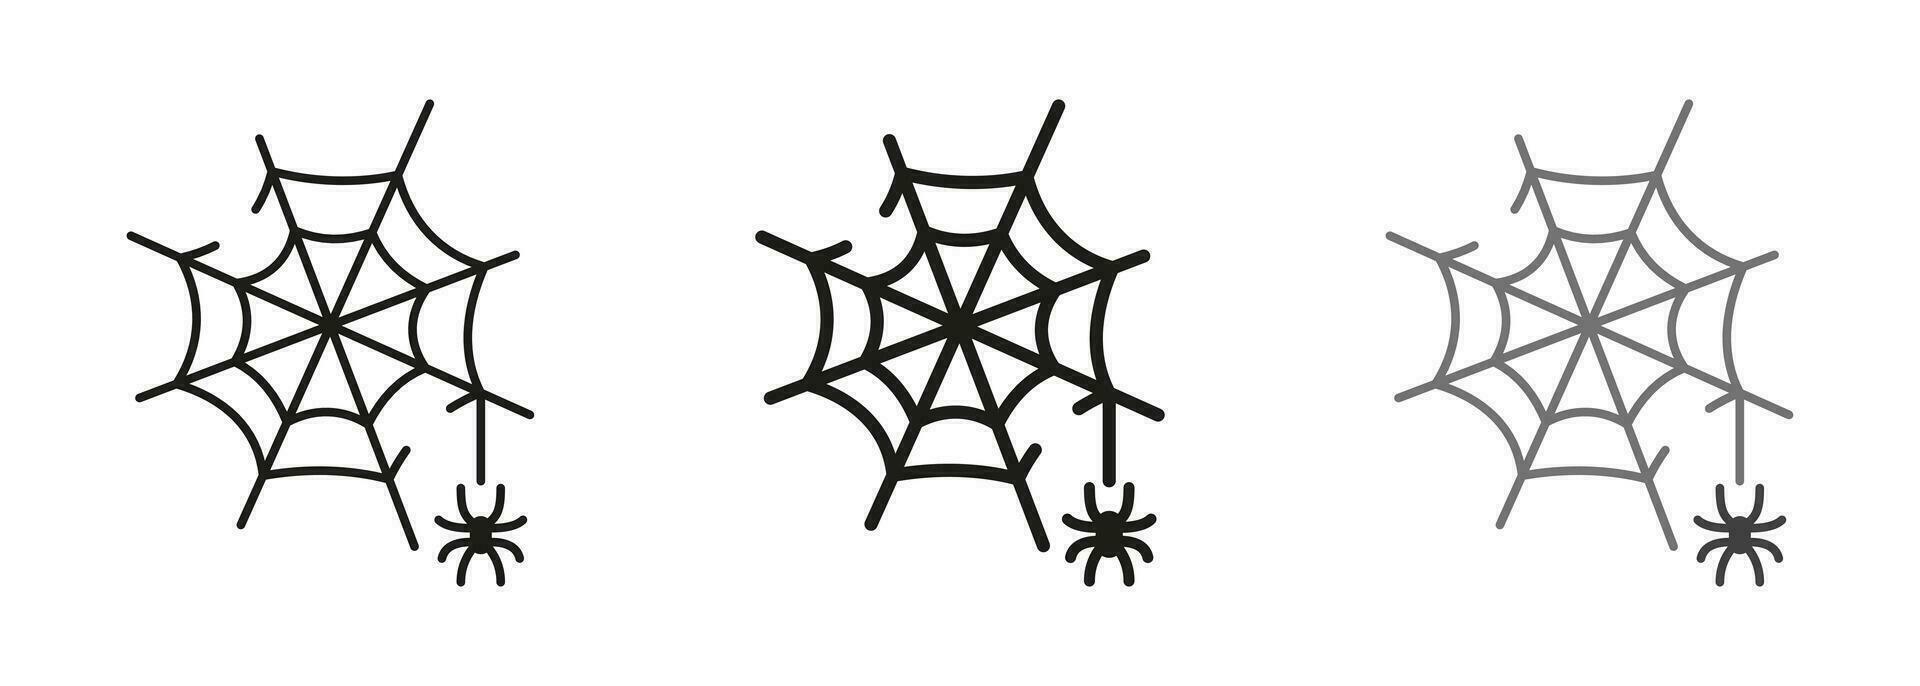 telaraña línea y silueta icono colocar. escalofriante araña web, Víspera de Todos los Santos decoración pictograma. temor telaraña trampa con araña en hilo símbolo recopilación. aislado vector ilustración.